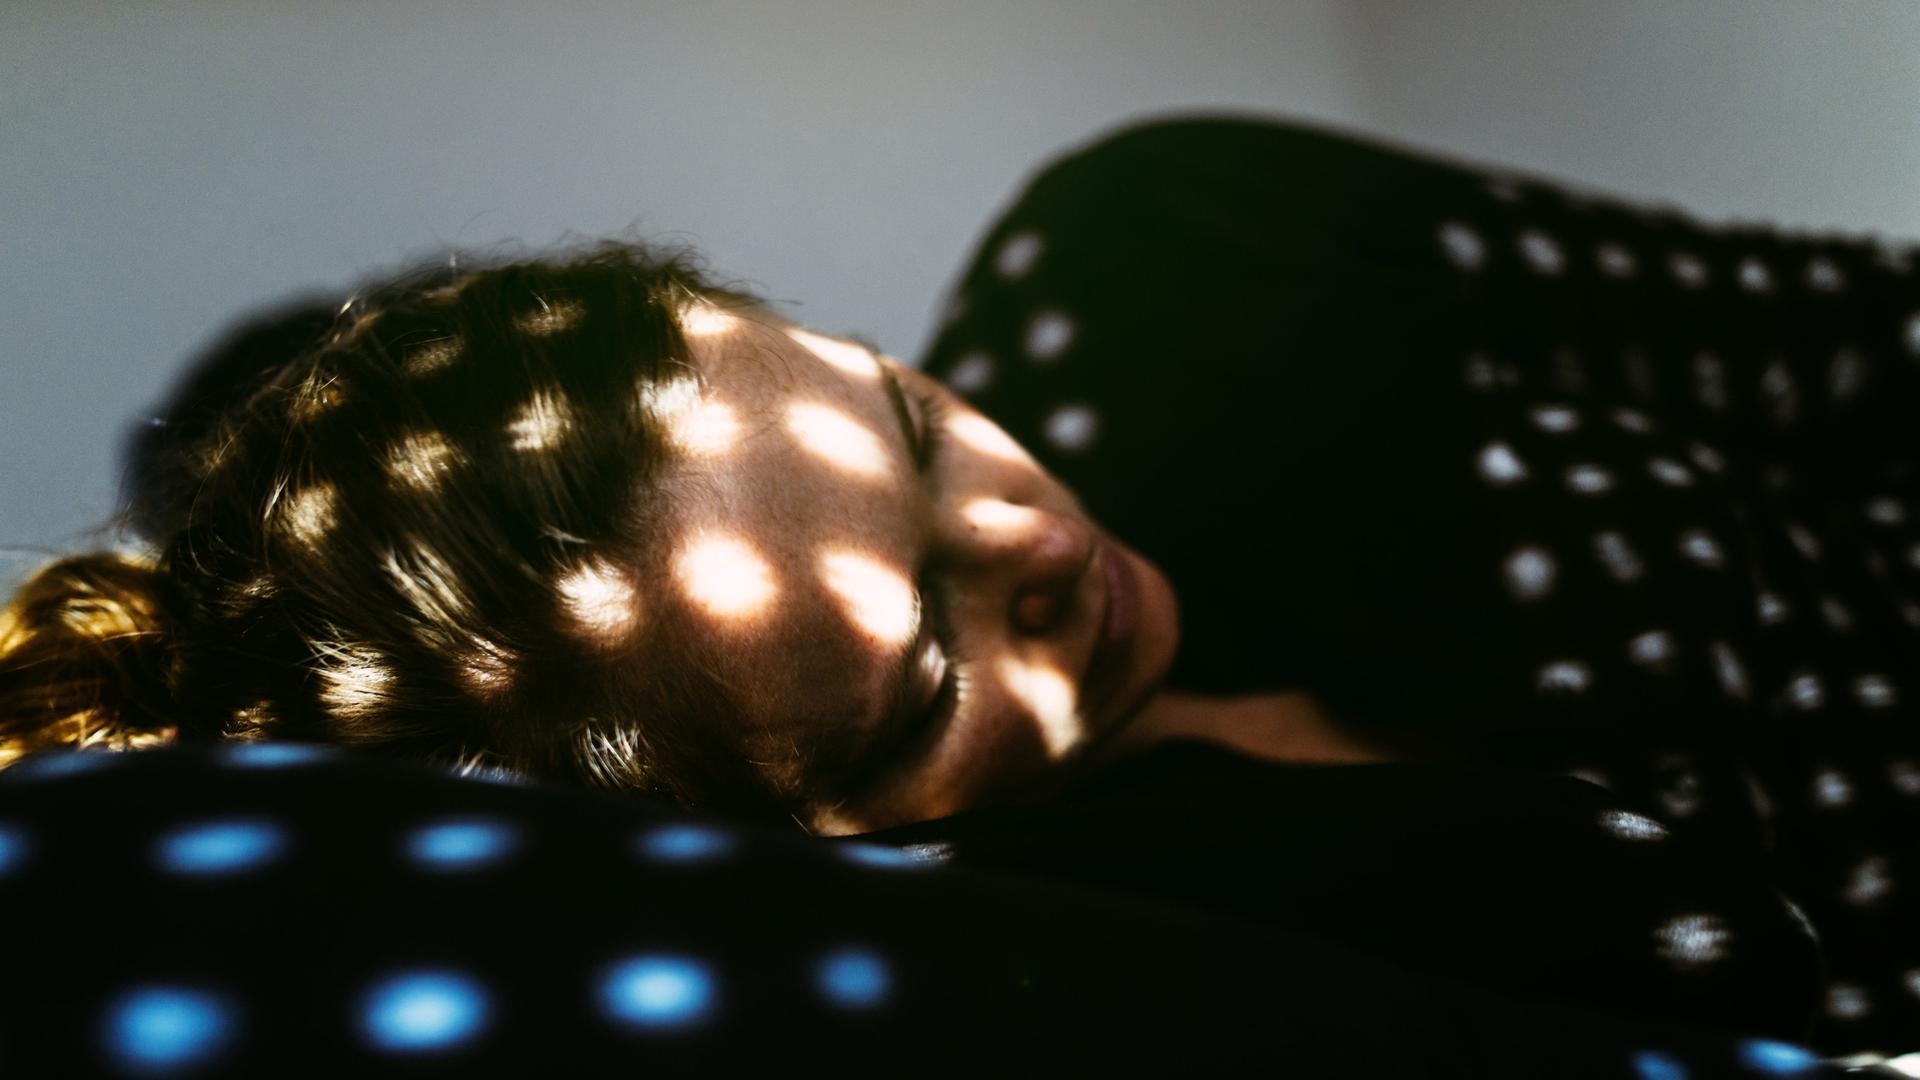 Eine Frau liegt in Fötusstellung auf einem Bett, Sonnensprenkel fallen durch eine halb geschlossene Jalousie auf sie.